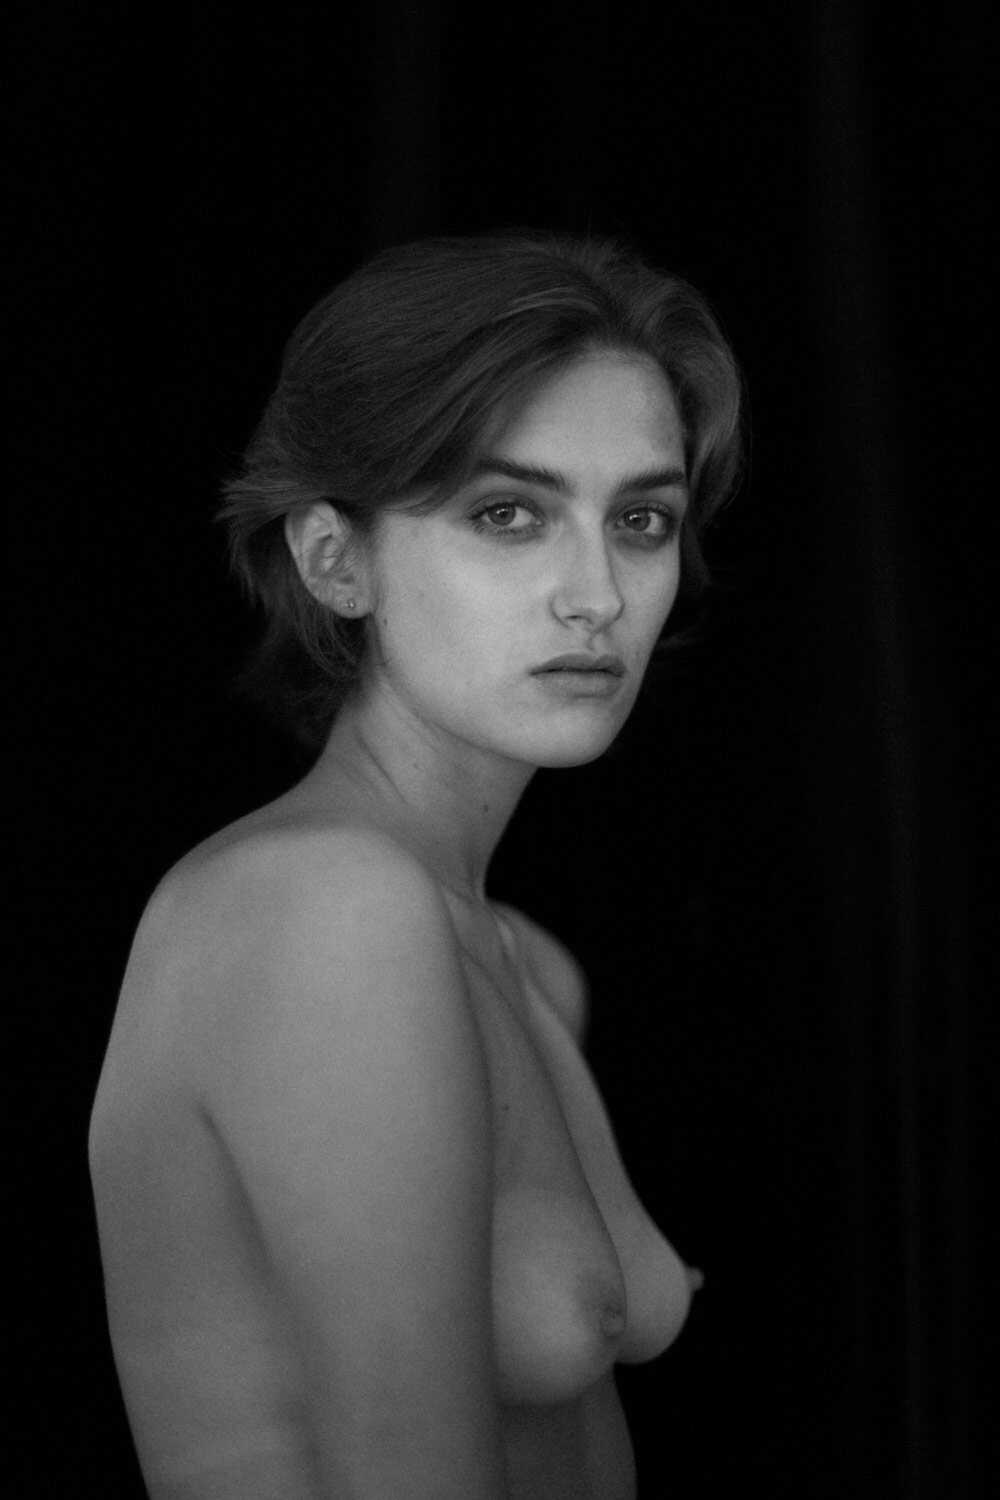 Το μοντέλο Wiktoria Kasprzak σε γυμνές φωτογραφίες